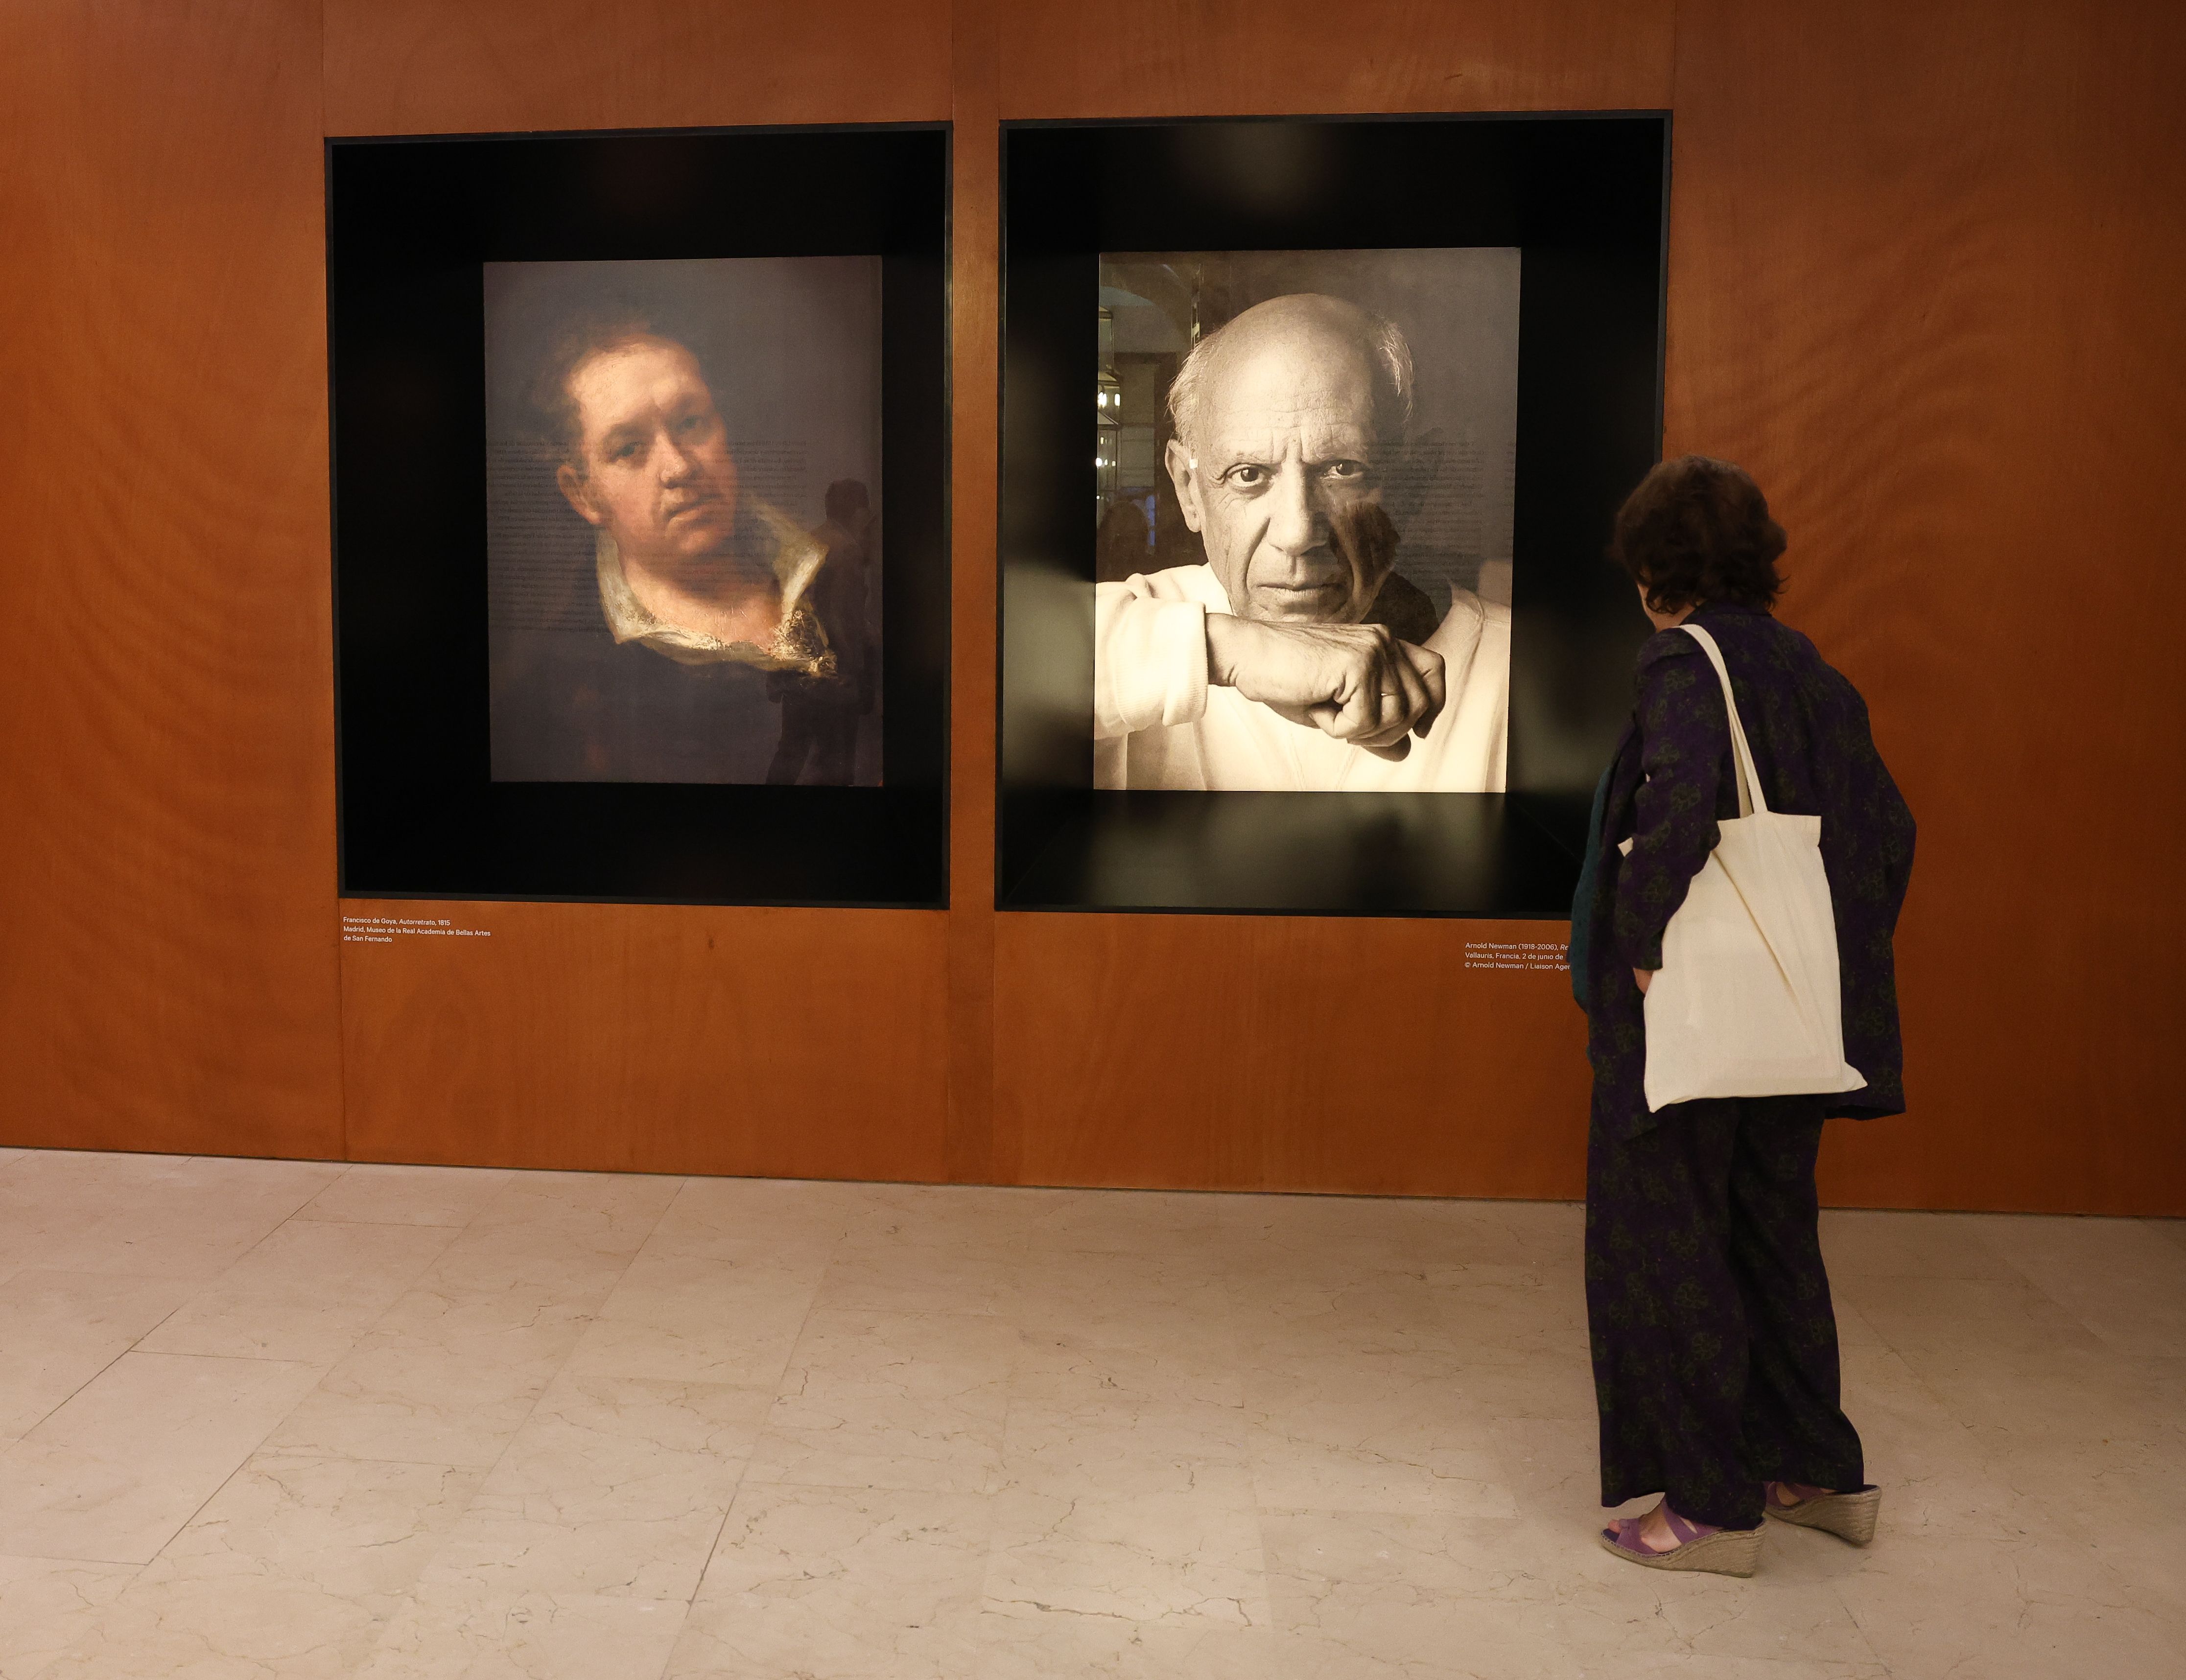 Picasso y su admiración por Goya se exponen en el Musée de Goya de Castres (Francia)